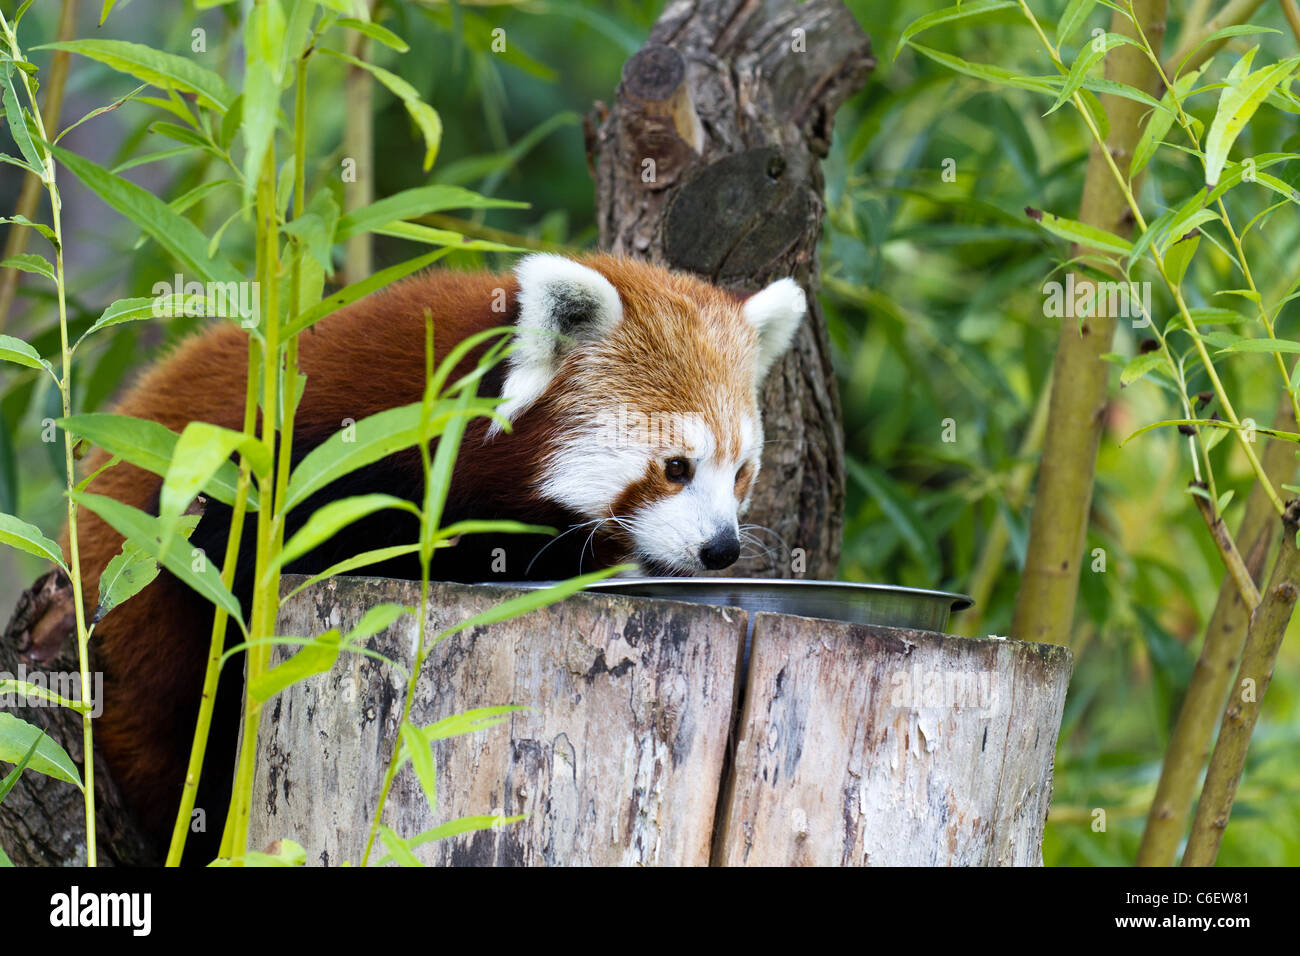 Un panda rouge à la recherche de nourriture. Prises sur le Zoo de Chester. Banque D'Images